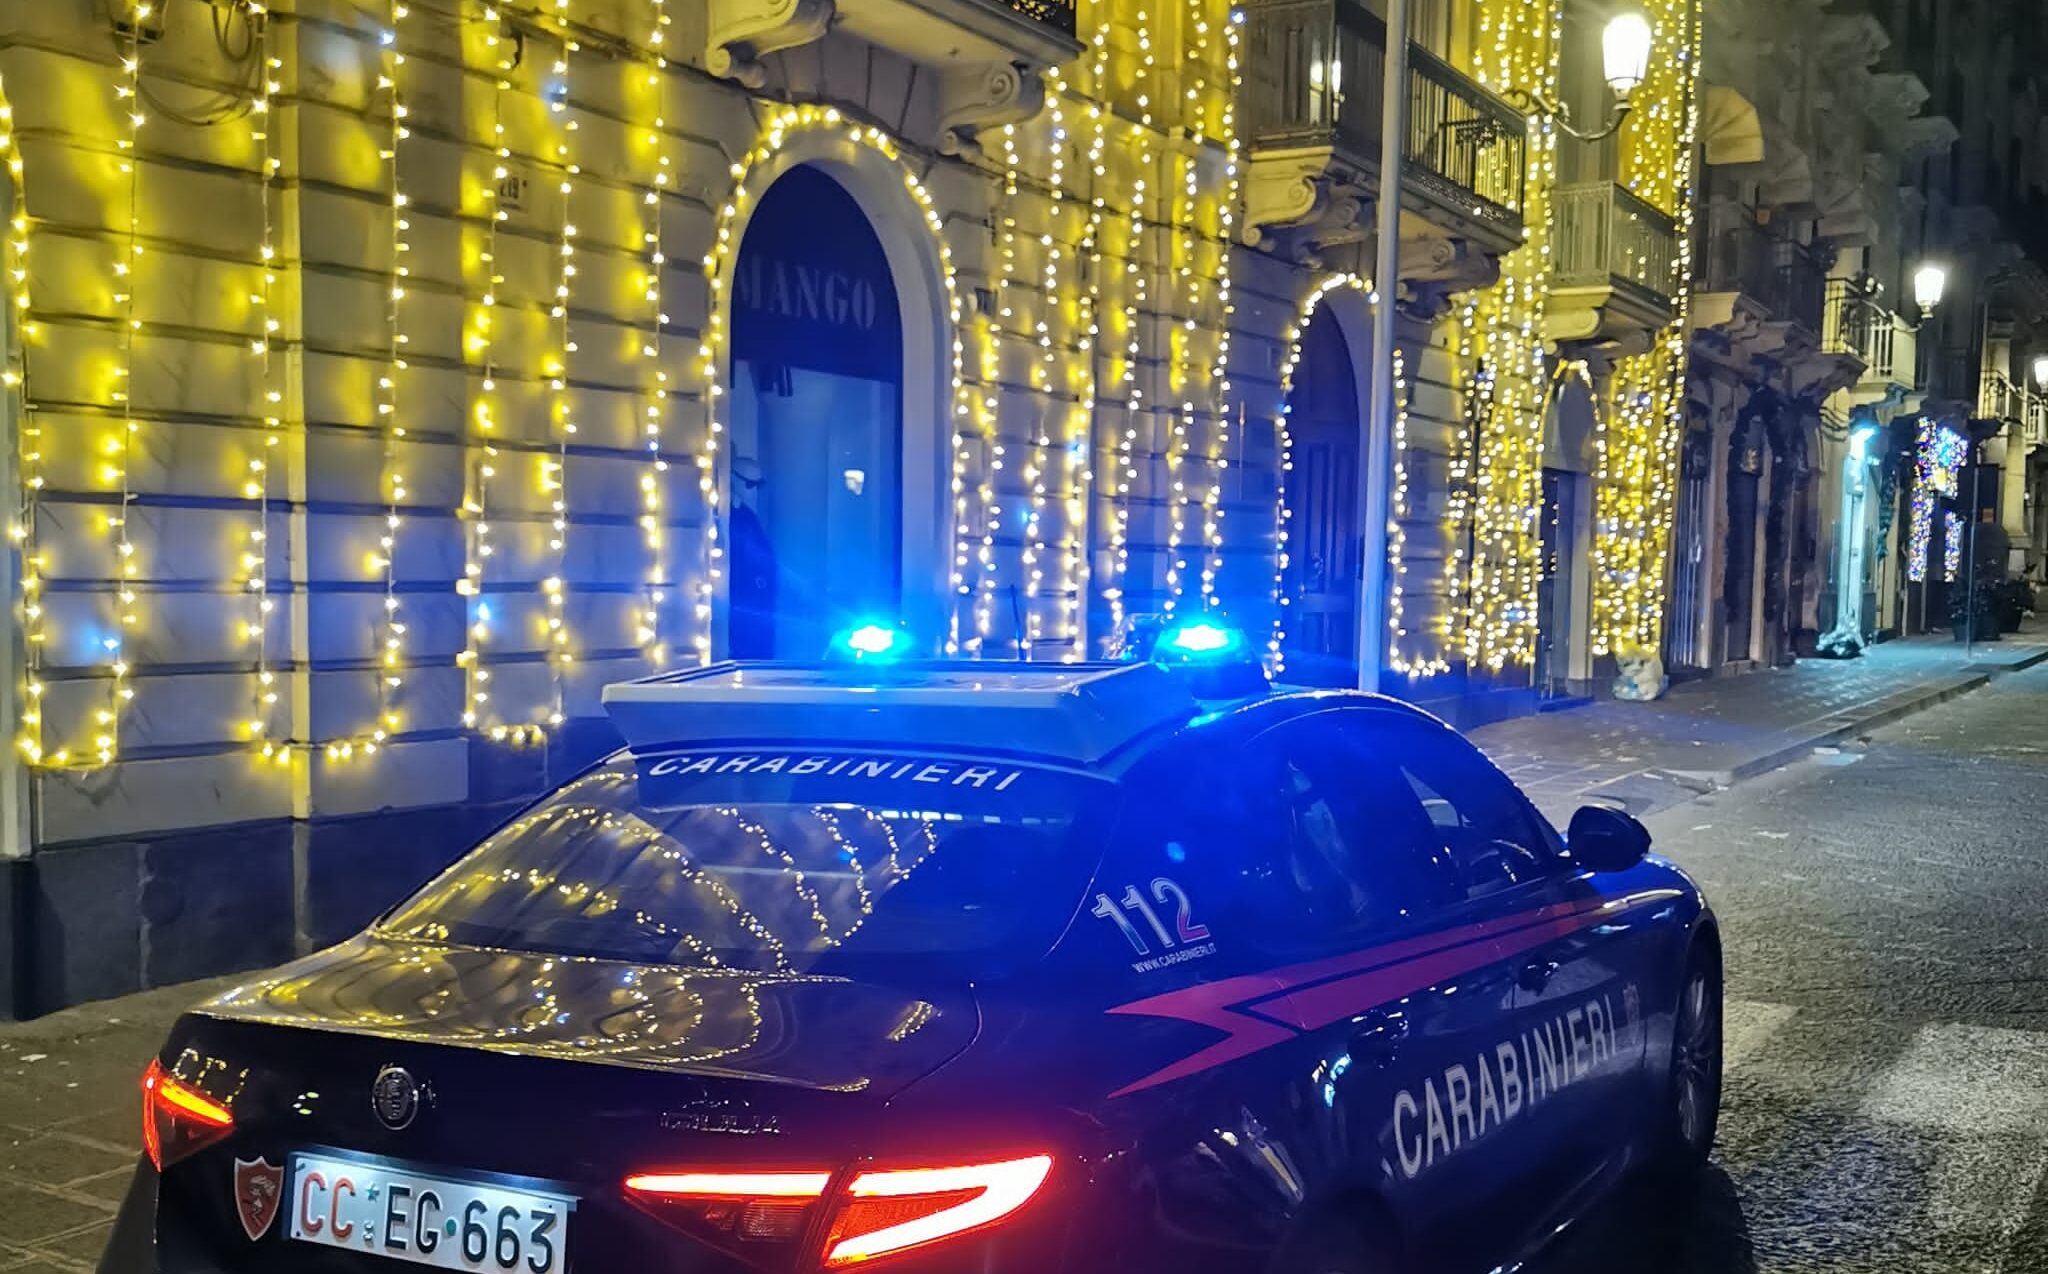 Natale sereno all’ombra dell’Etna, a Catania scatta l’operazione “Buon Natale sicuro” per la sicurezza dei cittadini